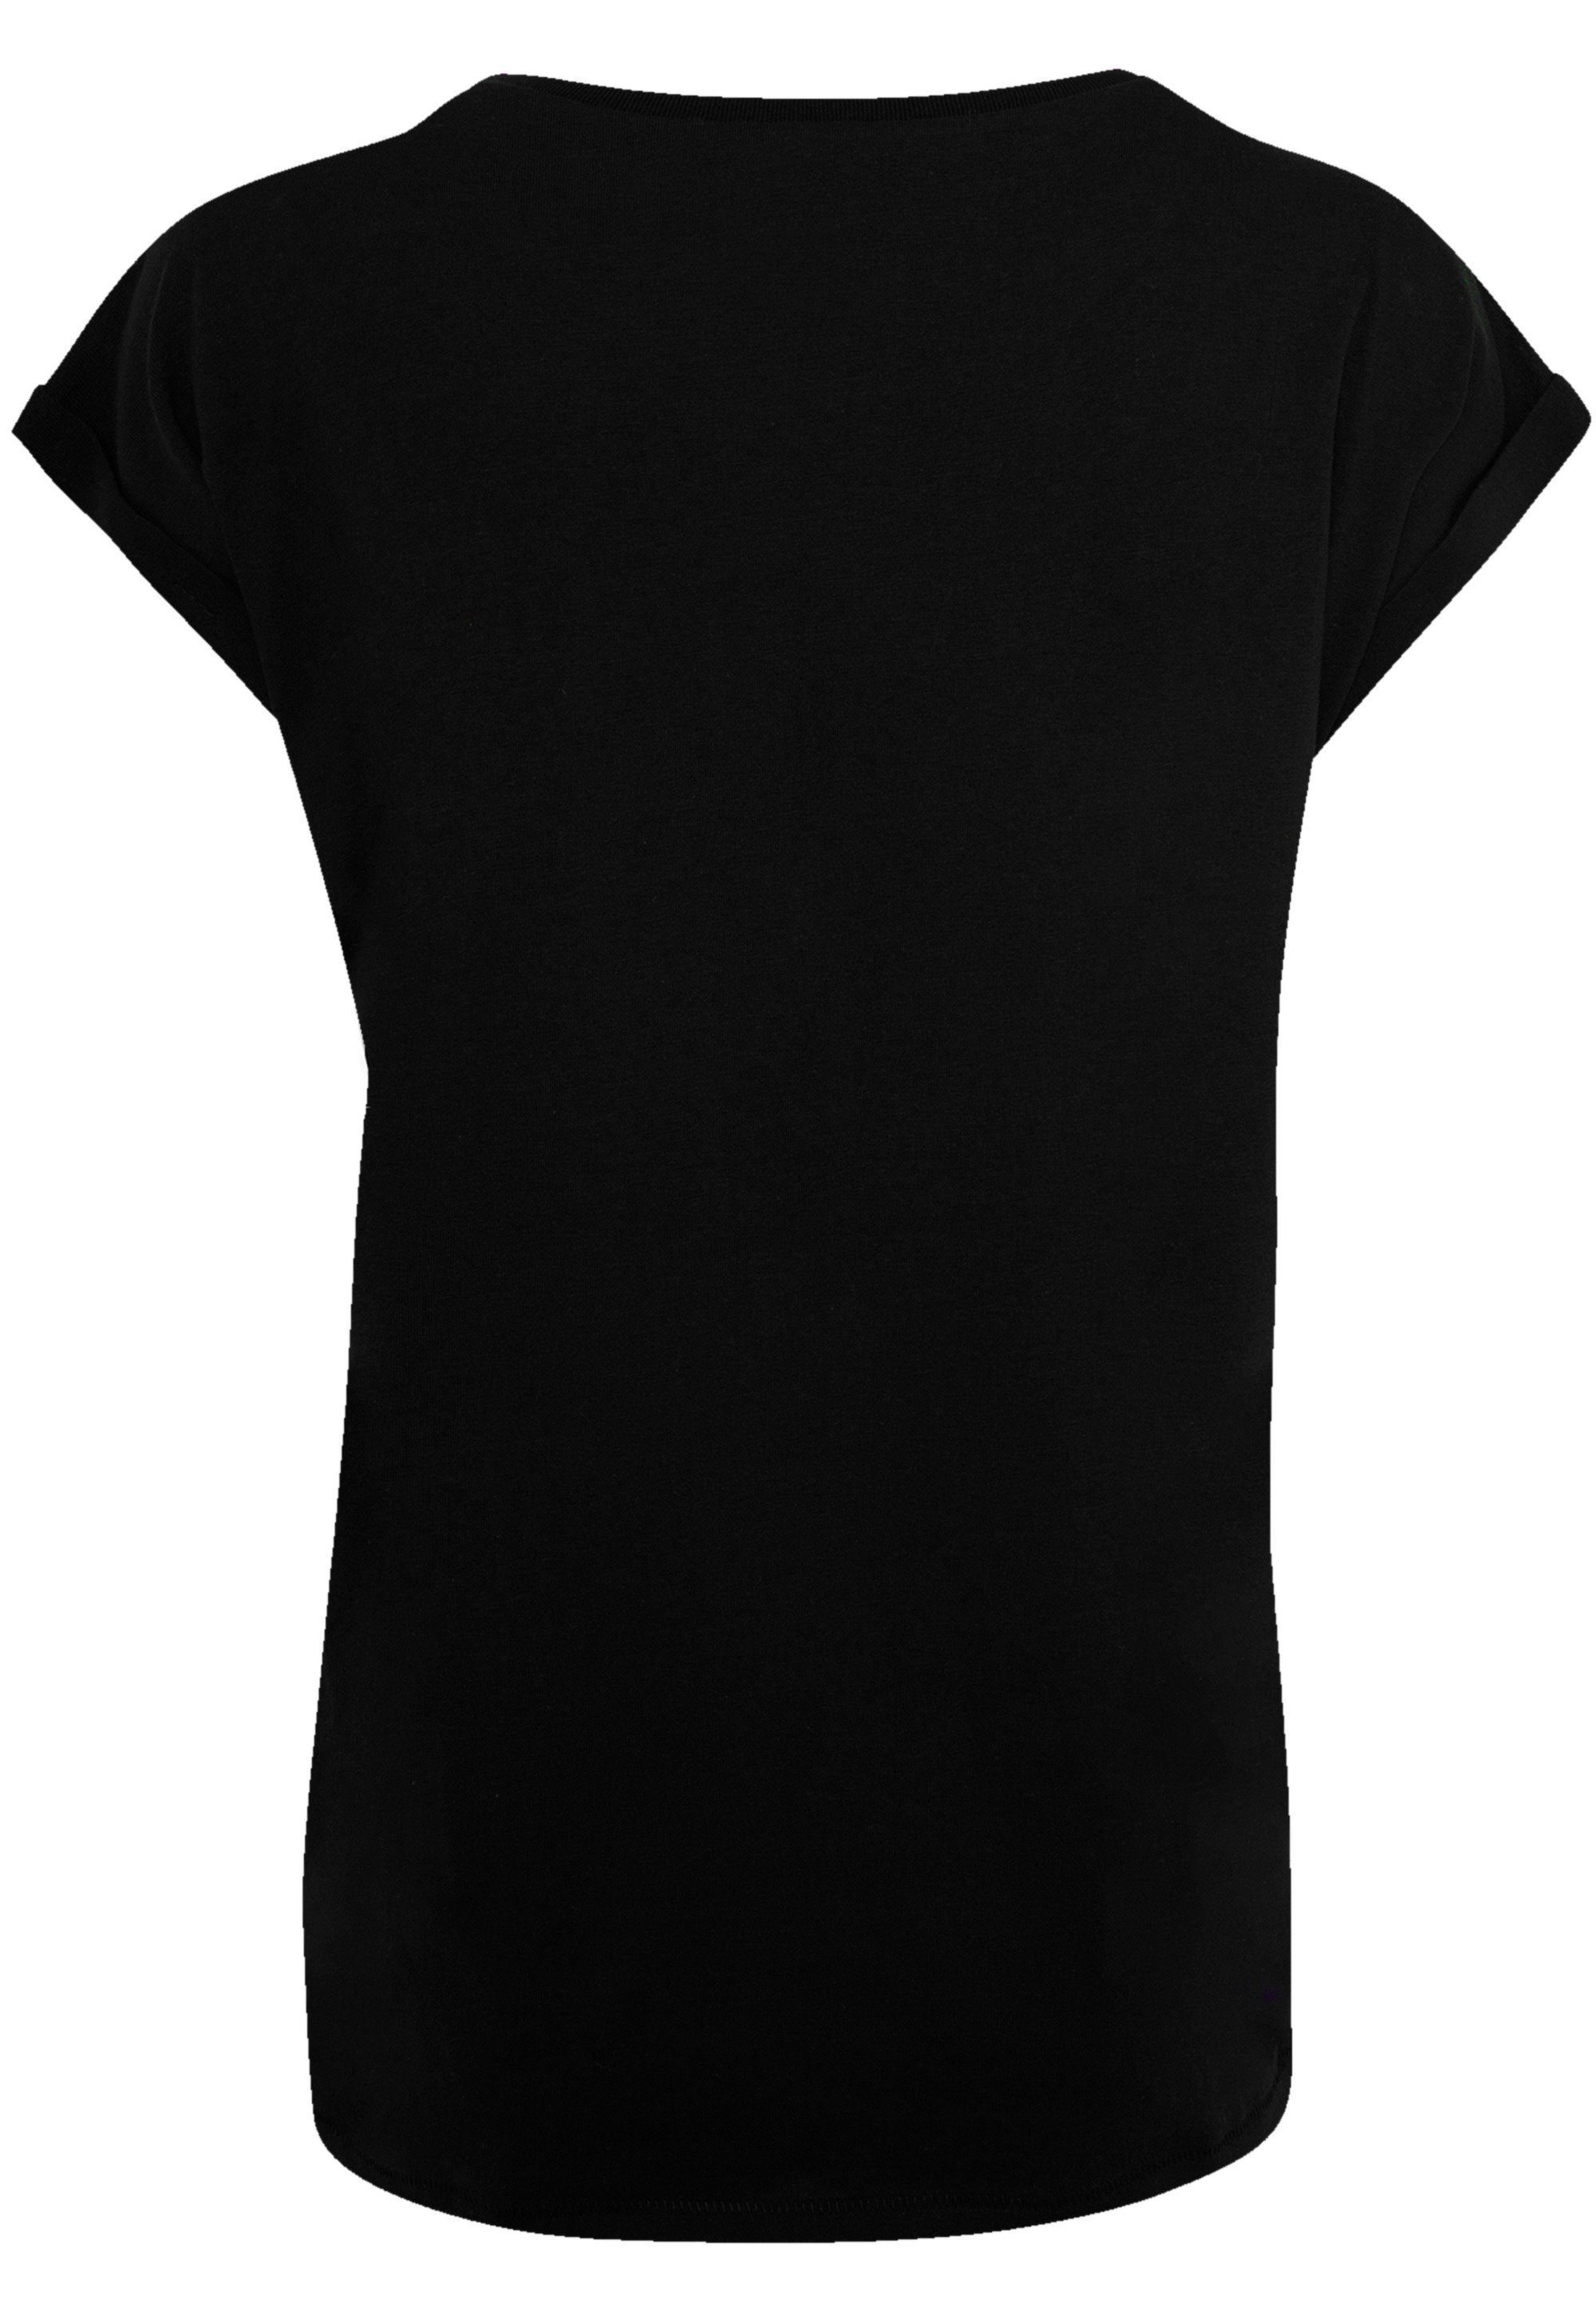 F4NT4STIC T-Shirt weicher Rock mit Distressed Band Qualität, Sehr Premium Baumwollstoff Tragekomfort hohem Rush Logo